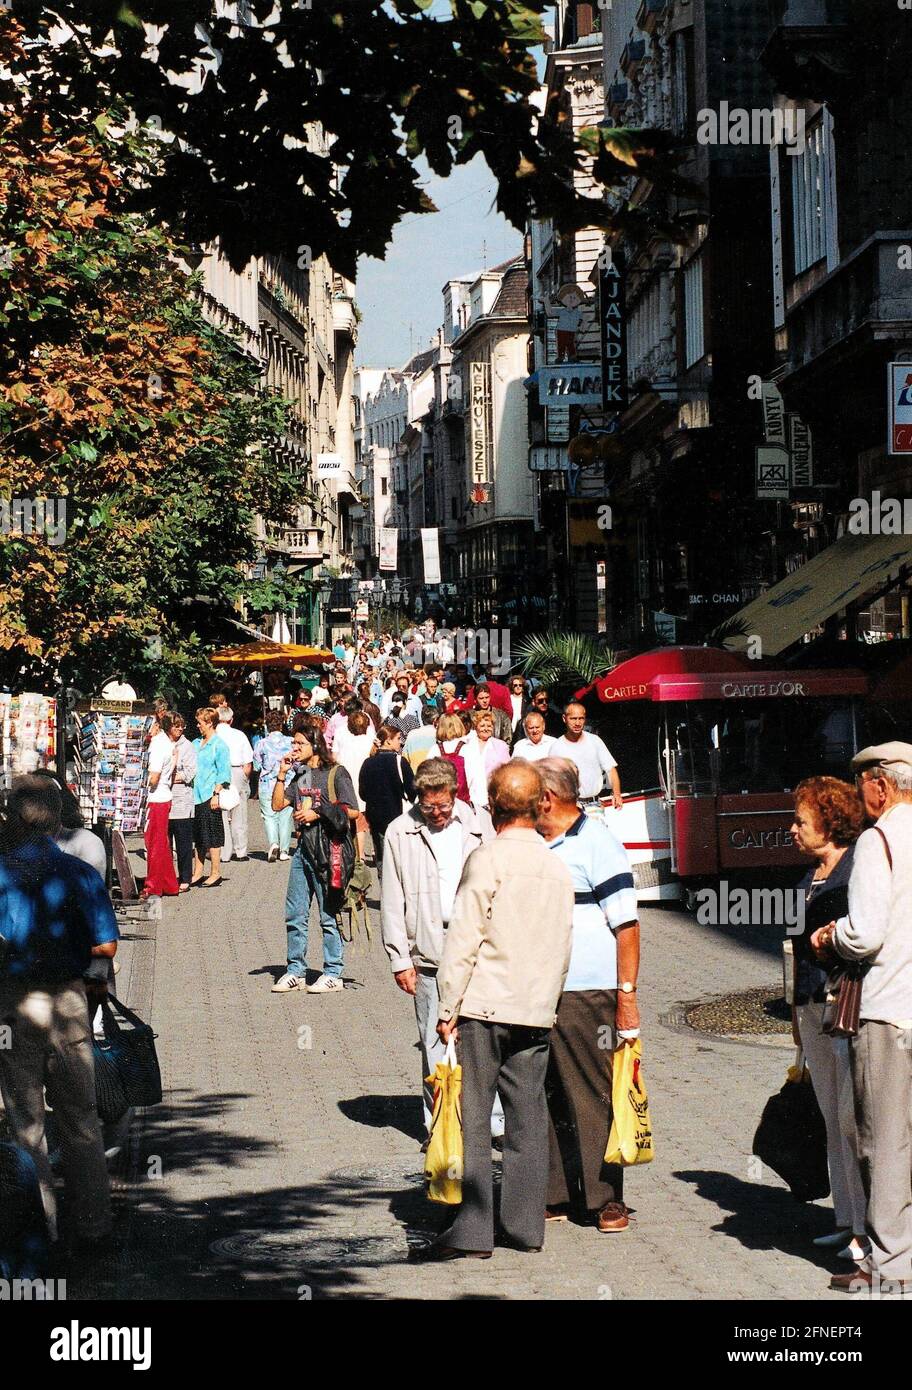 Die Váci utca in Budapest, die ehemalige Waitzner Gasse, ist eine der berühmtesten Fußgängerzonen der Welt. [Automatisierte Übersetzung] Stockfoto